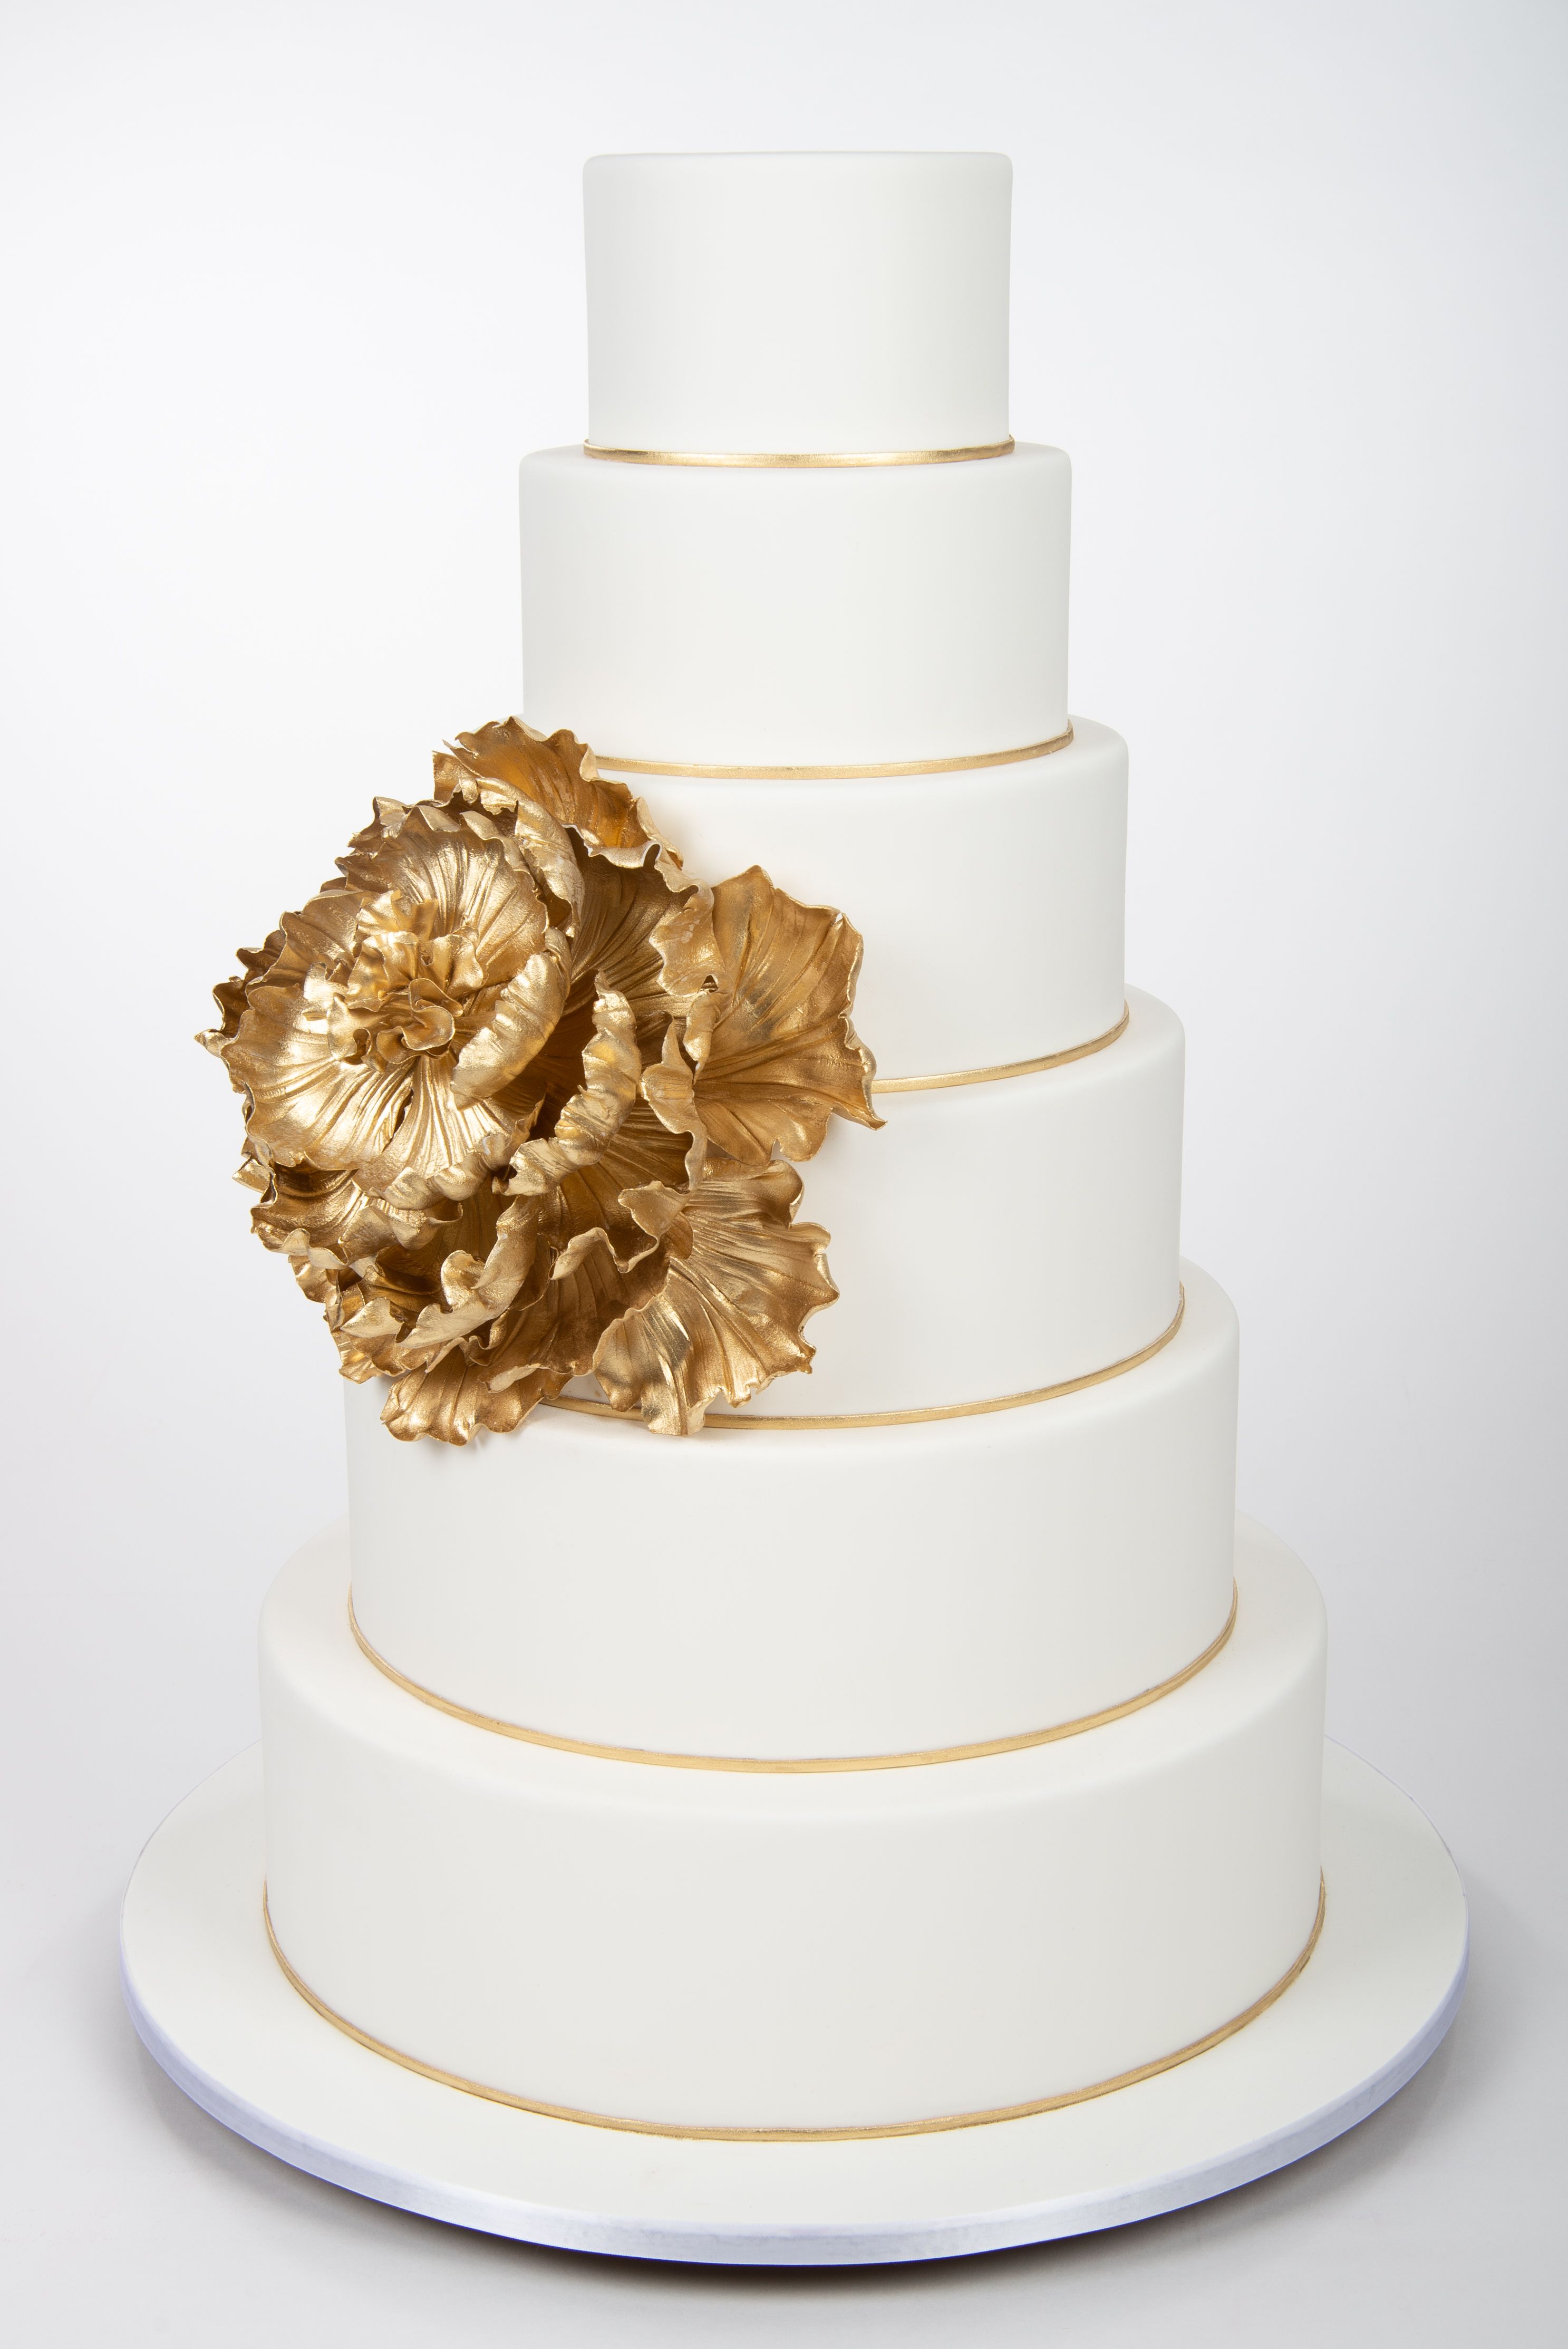 22 Seasonal Wedding Cake Ideas for a Winter Wedding